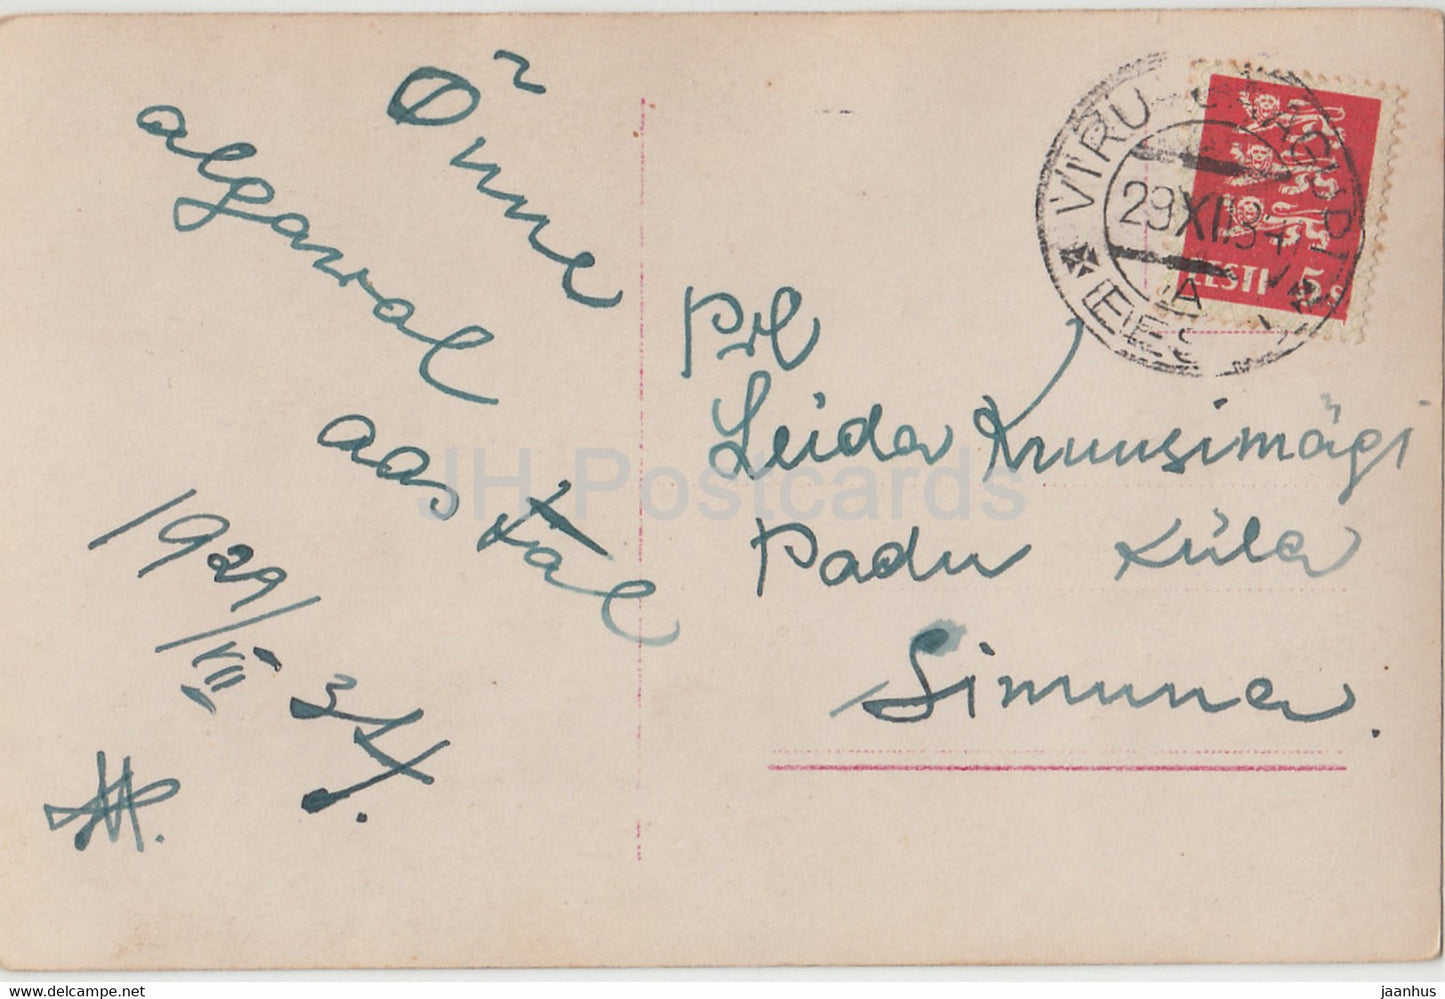 Amerikanische Schauspielerin Gloria Swanson - Film - Film - 3097 - 1934 - Deutschland - alte Postkarte - gebraucht